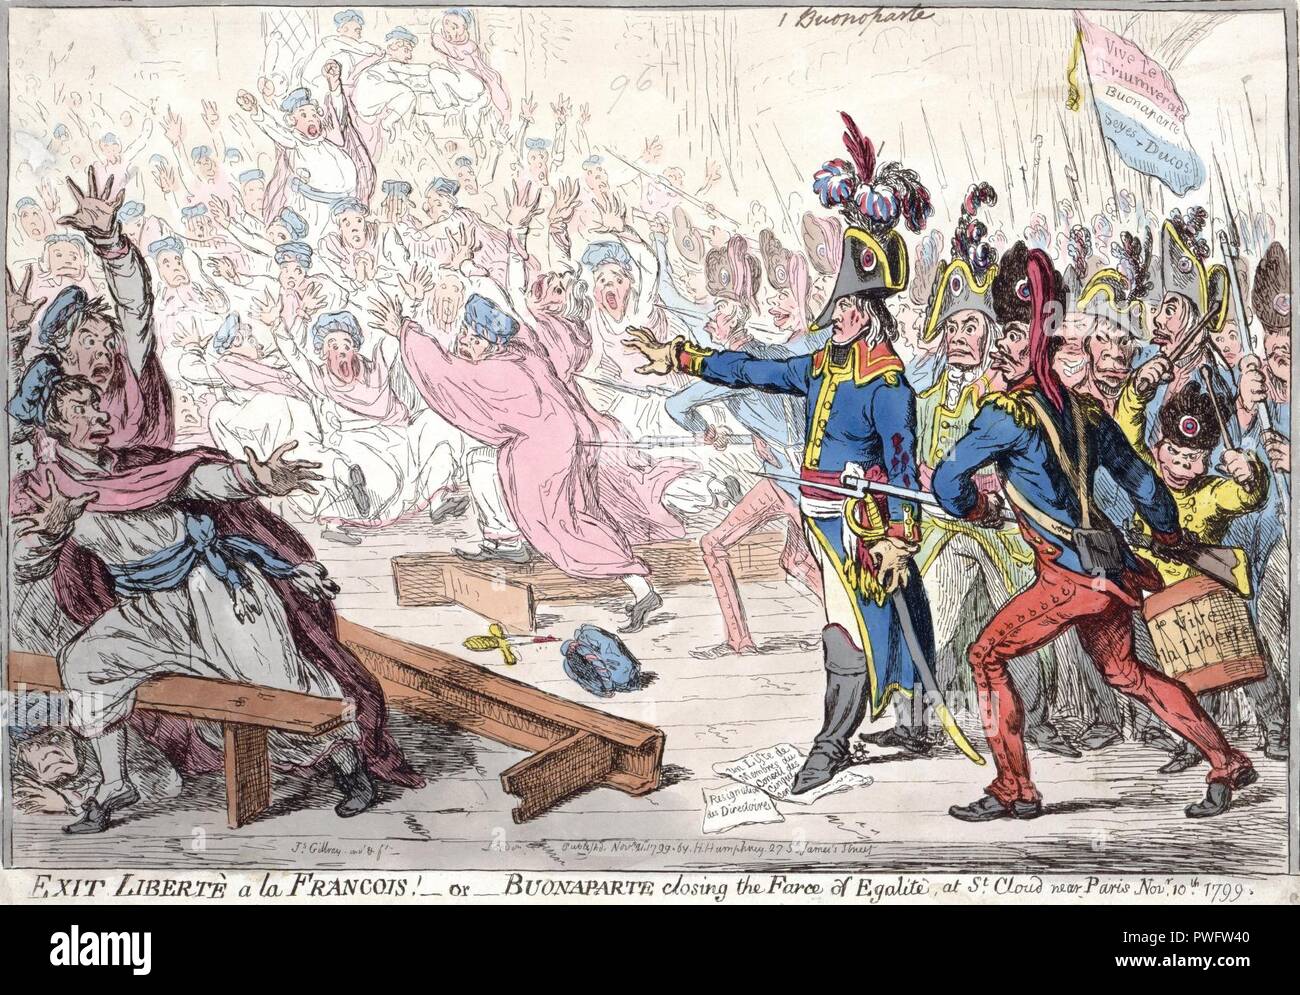 Bonaparte schließen die Farce der Egalité. Stockfoto